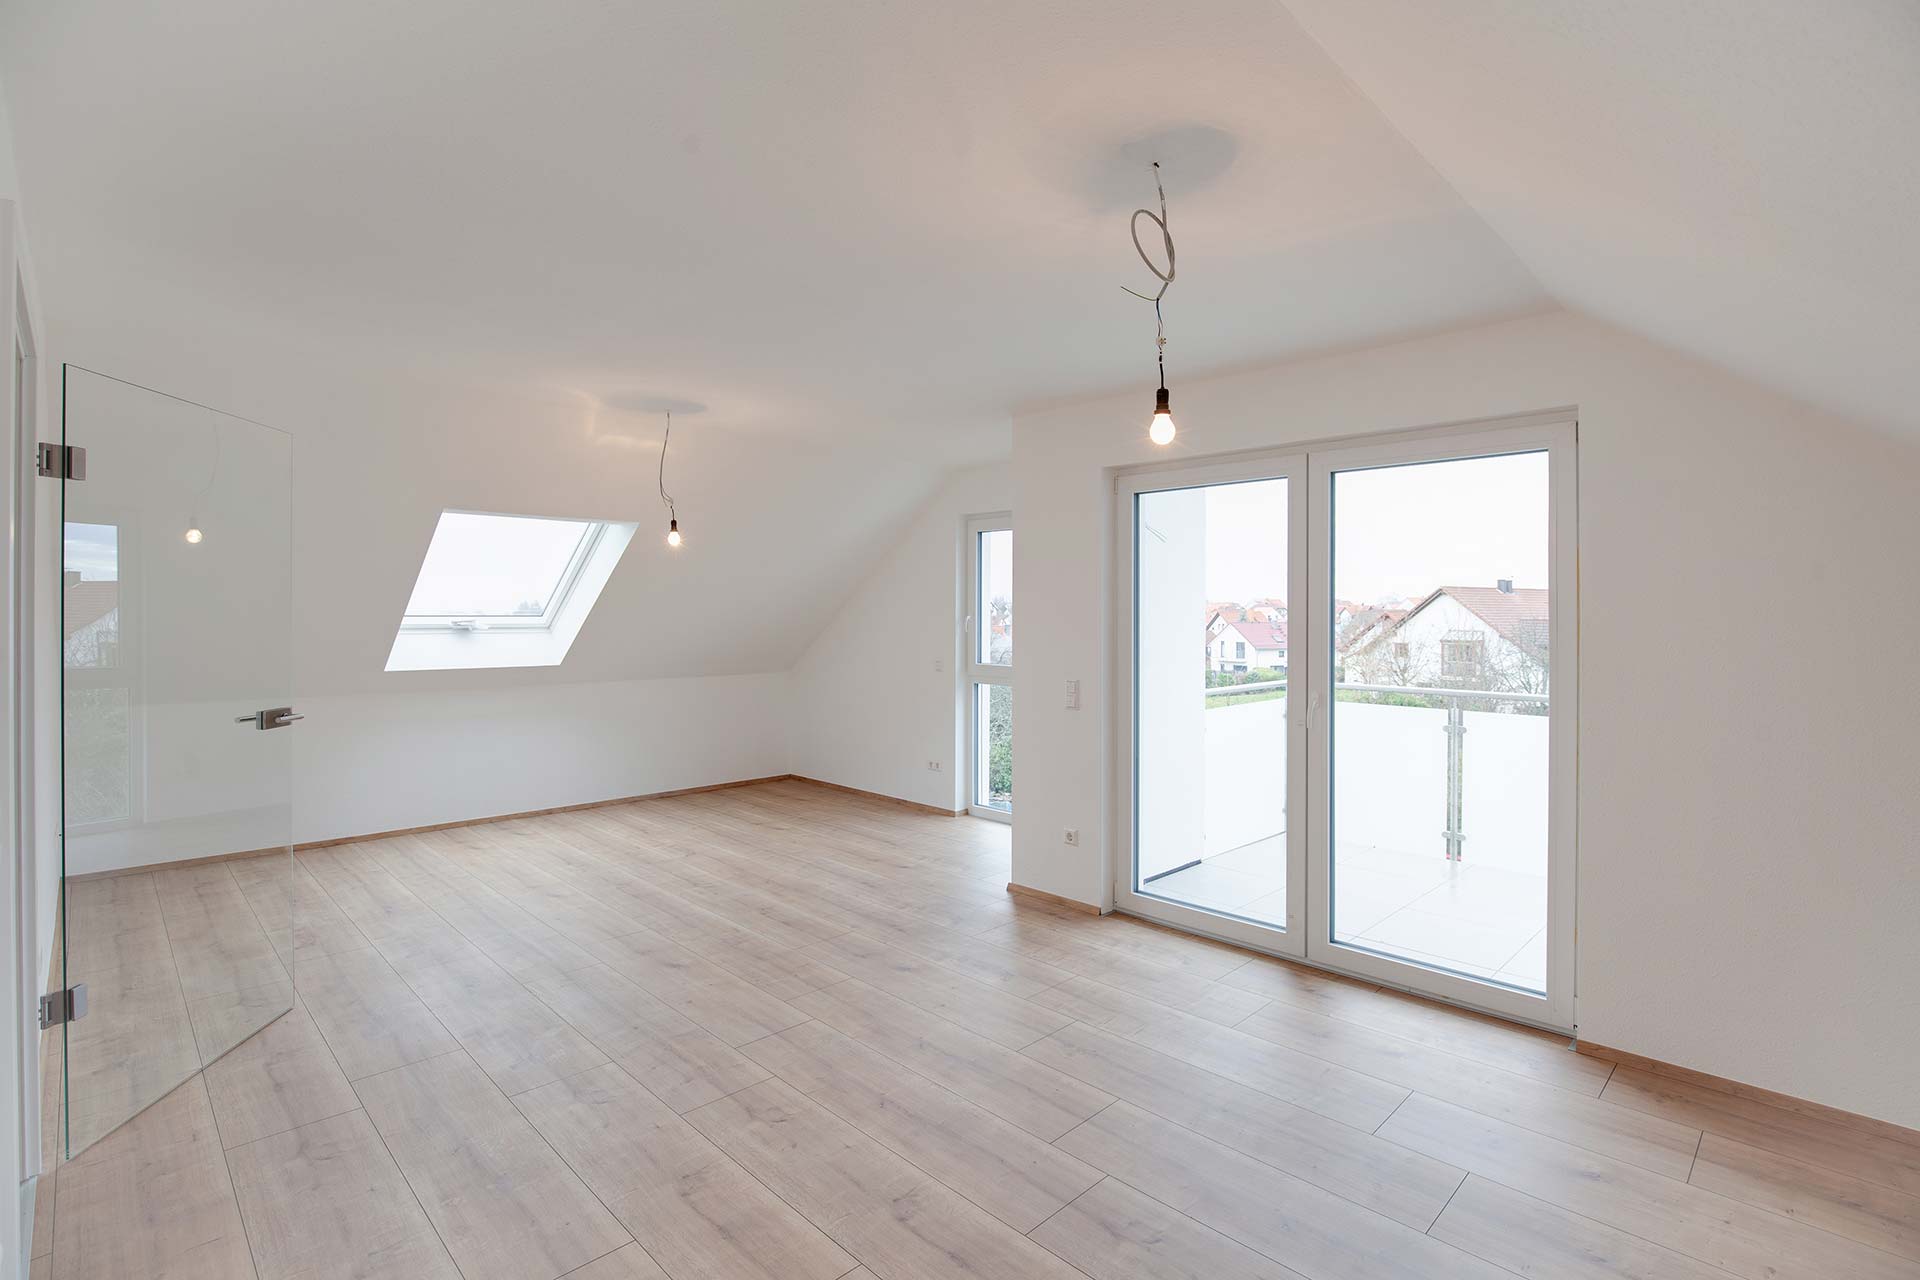 Herzlich Willkommen in Spessart: Wohnung im Dachgeschoss mit 4 Zimmern und Garage zu vermieten